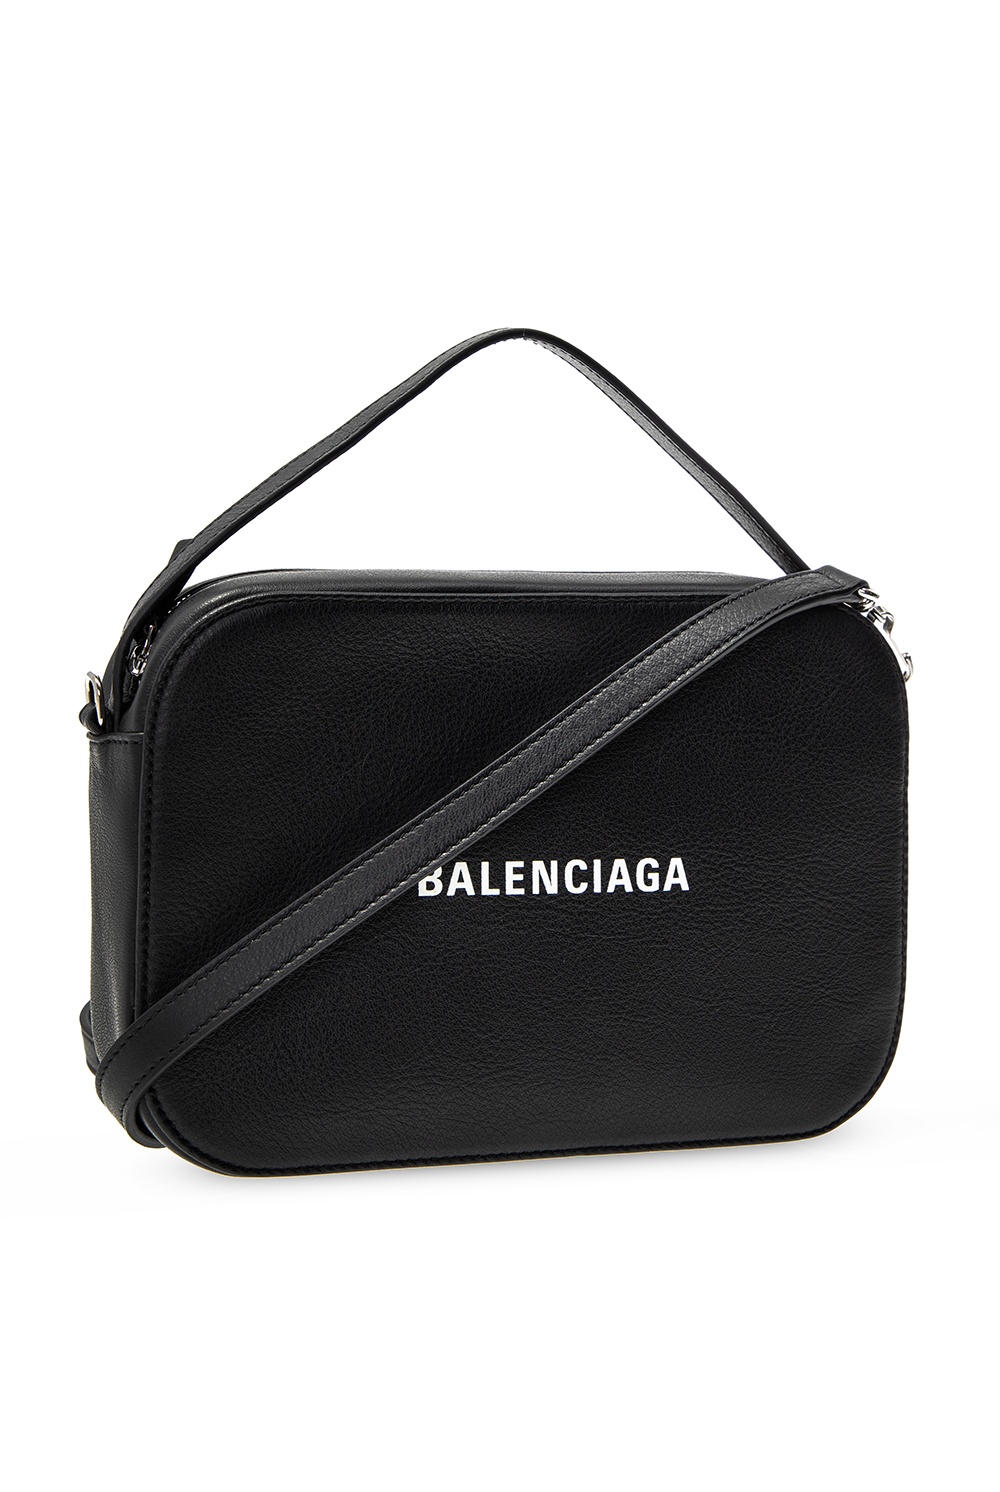 balenciaga everyday shoulder bag